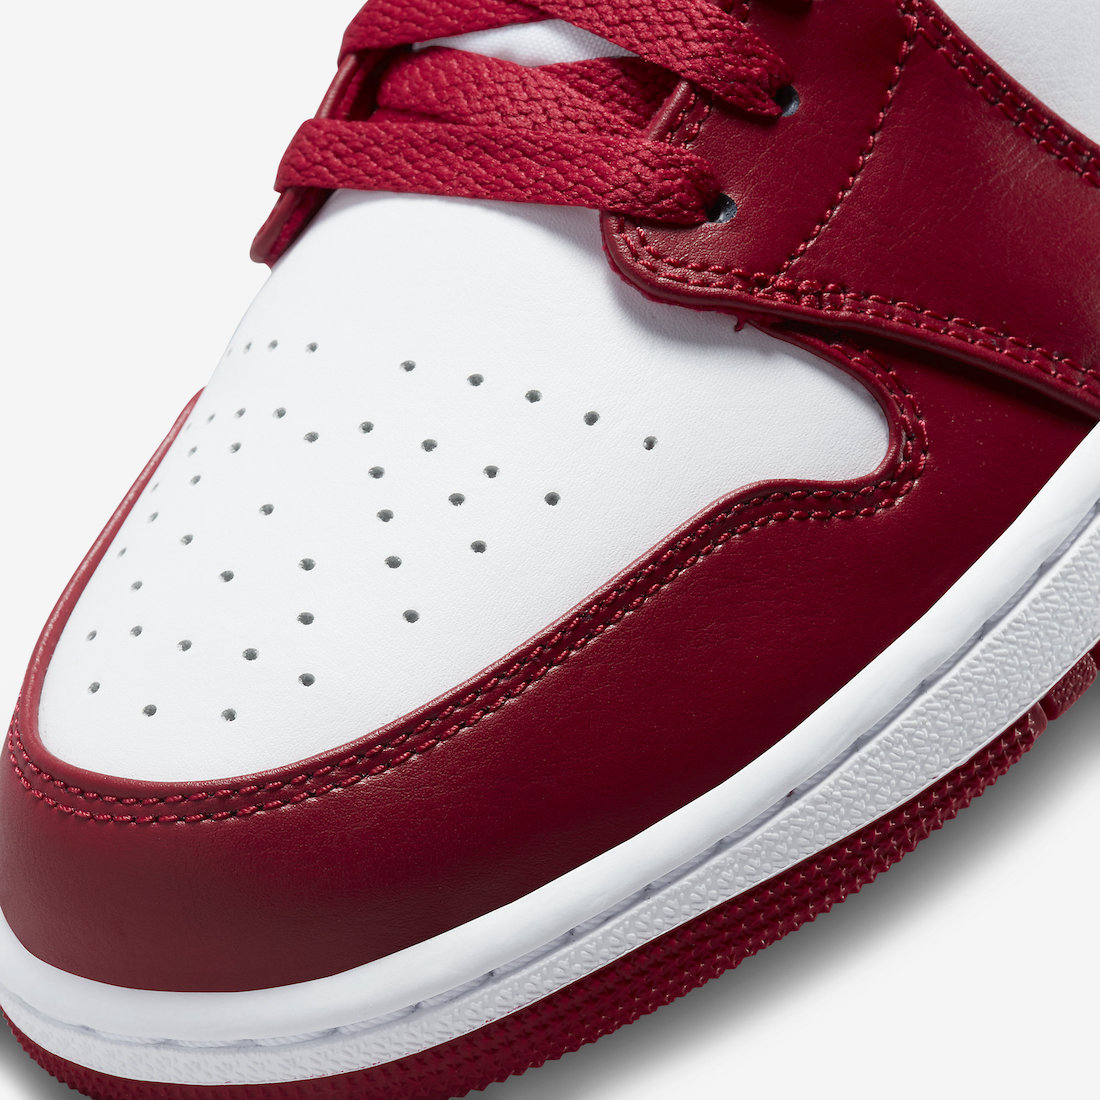 Air Jordan 1 Low Cardinal Red 553558-607 Release Date